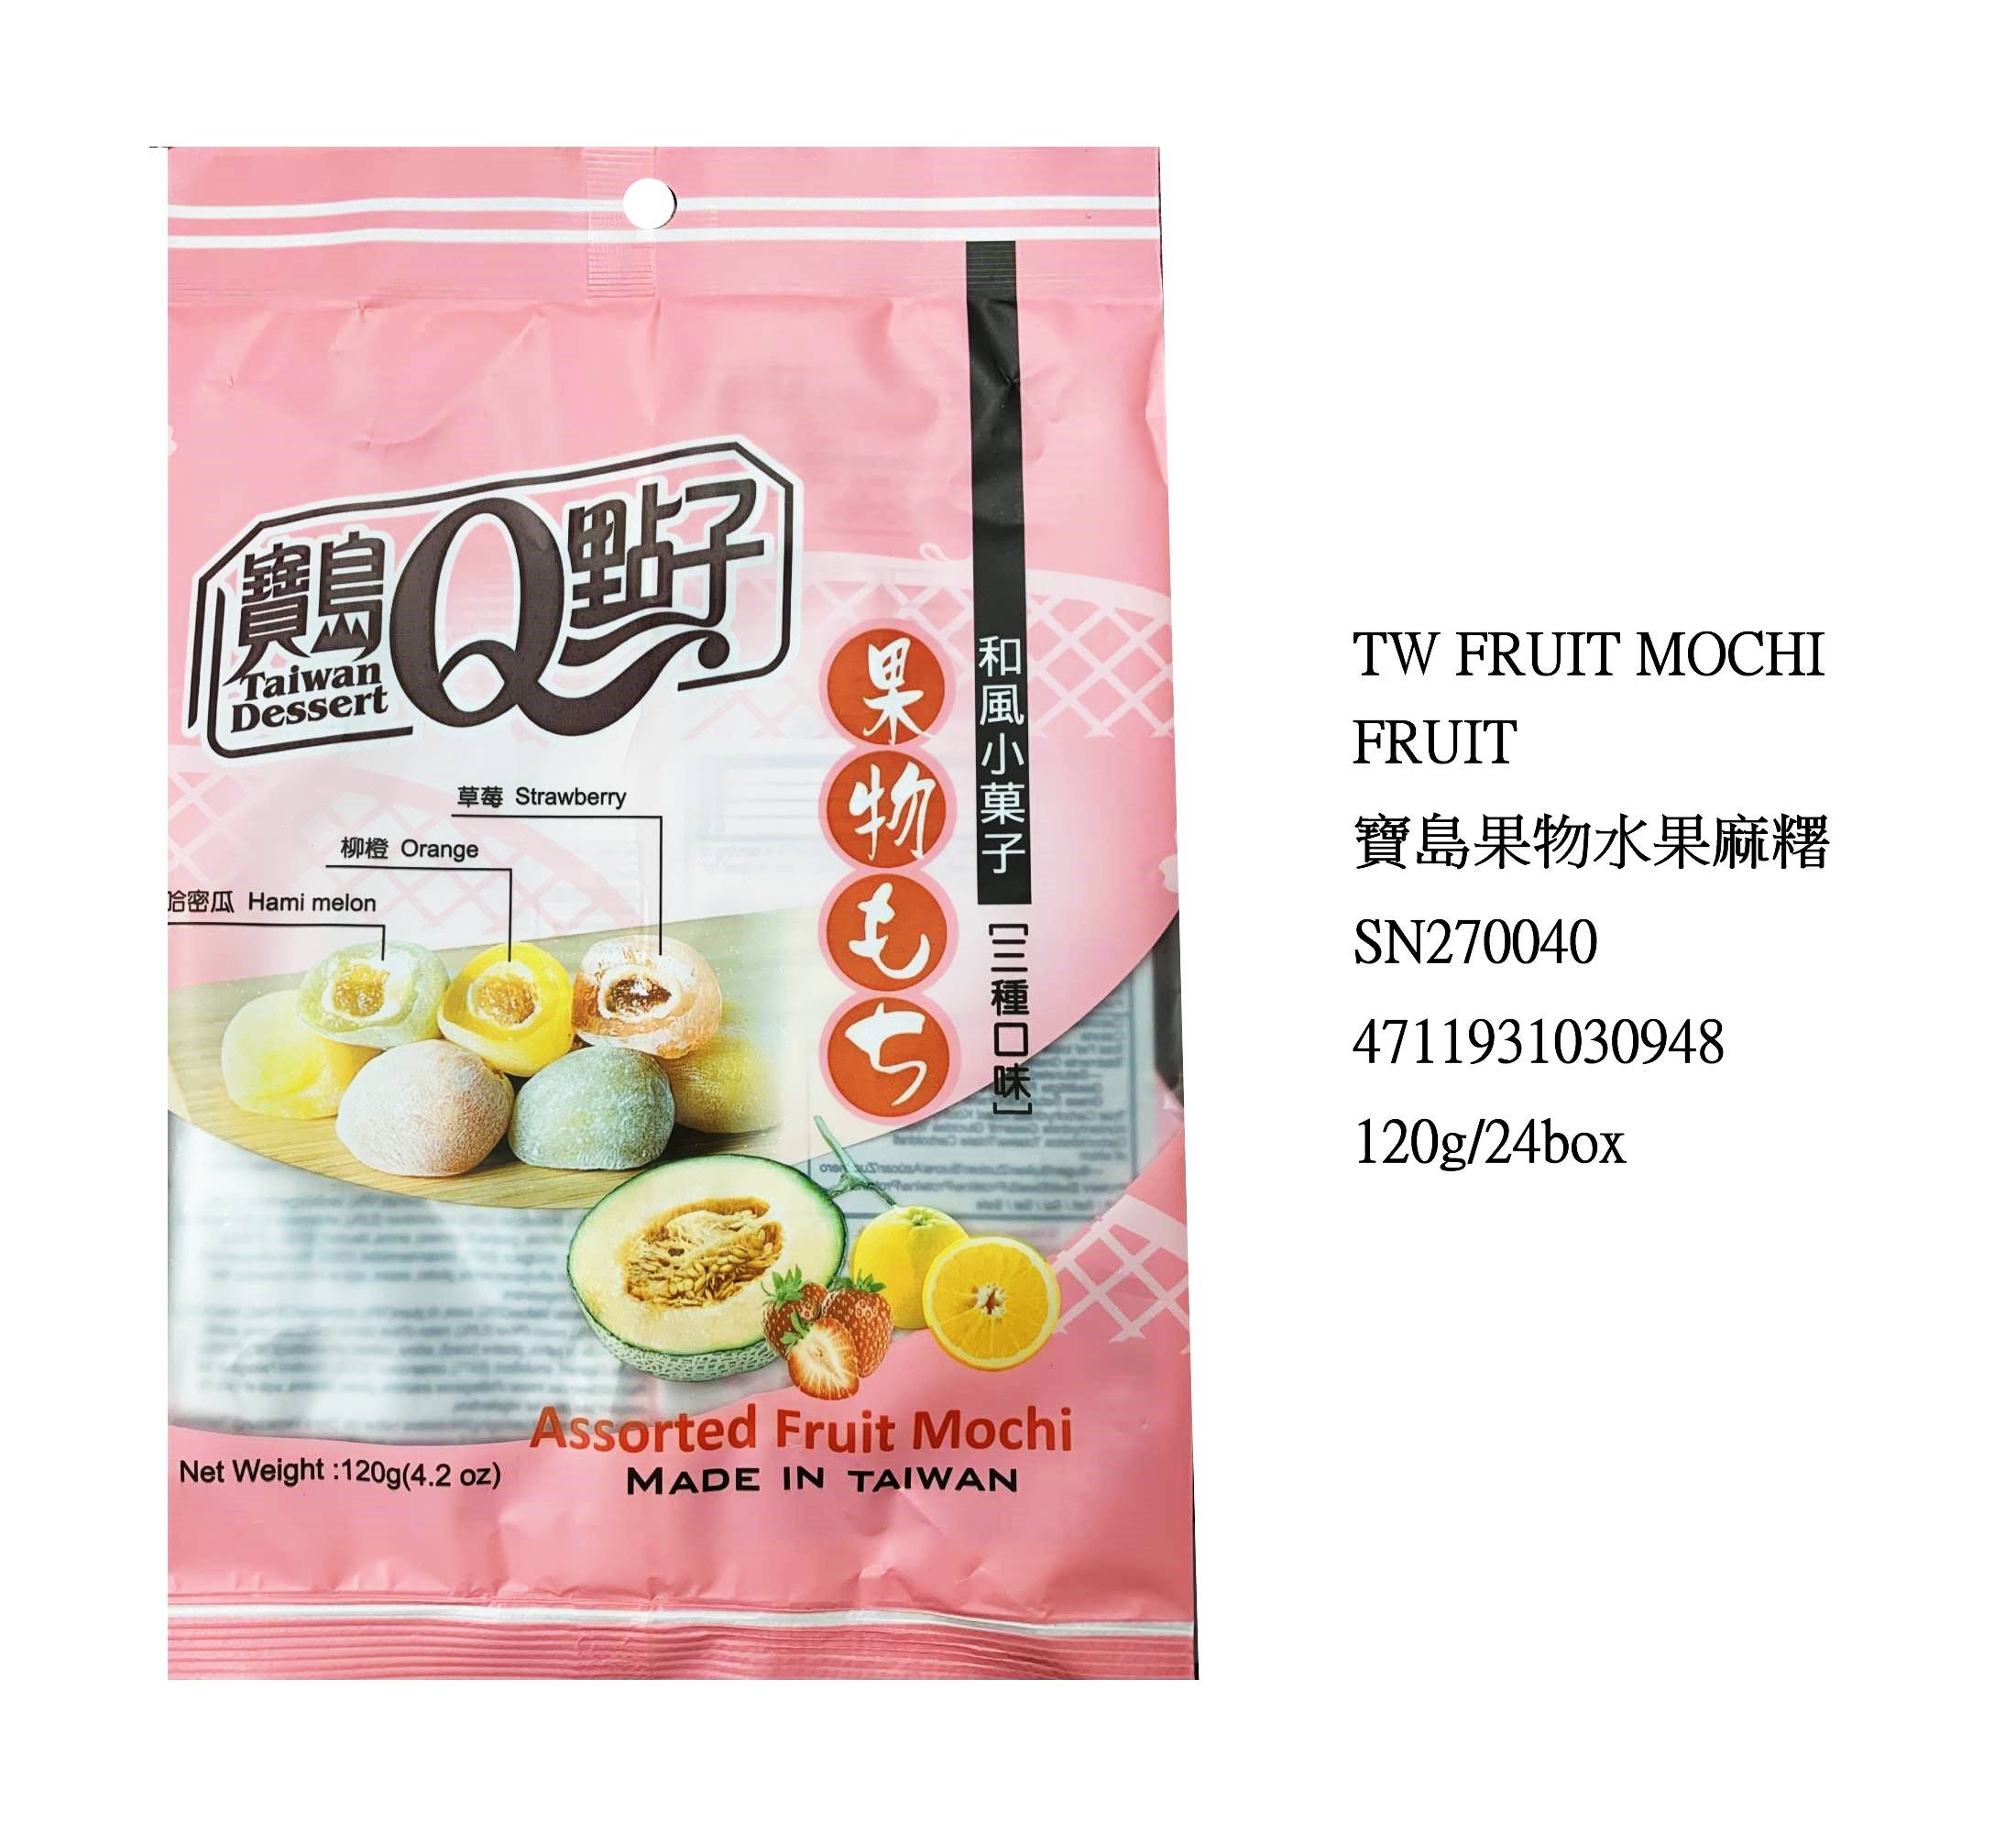 TAIWAN ASSORTED FRUIT MOCHI SN270040